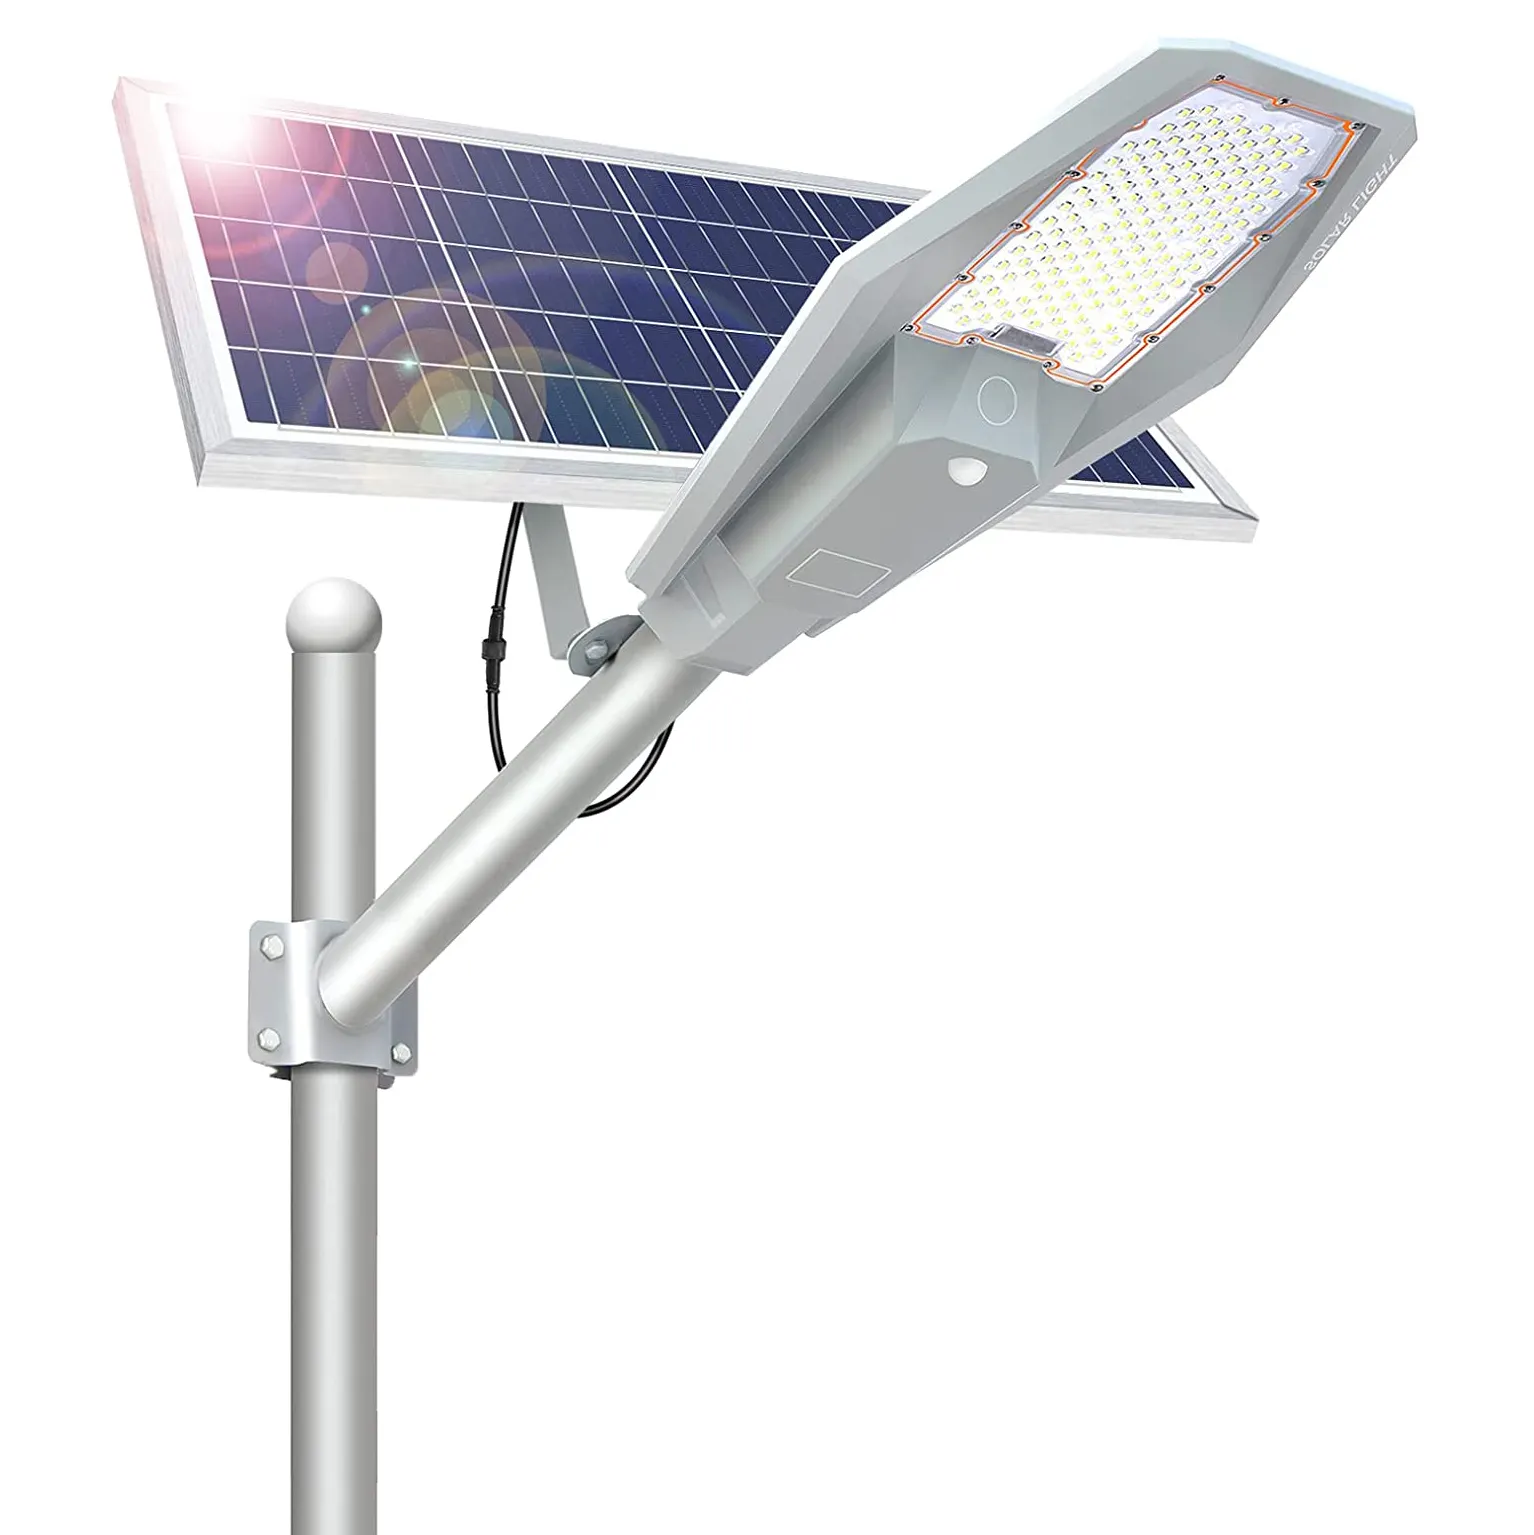 Solar LED-Licht Außen 100W 200W 300W 400W Solar panel Lampen mit Remote Sunlight LED Straßen laternen für Garden Yard Road